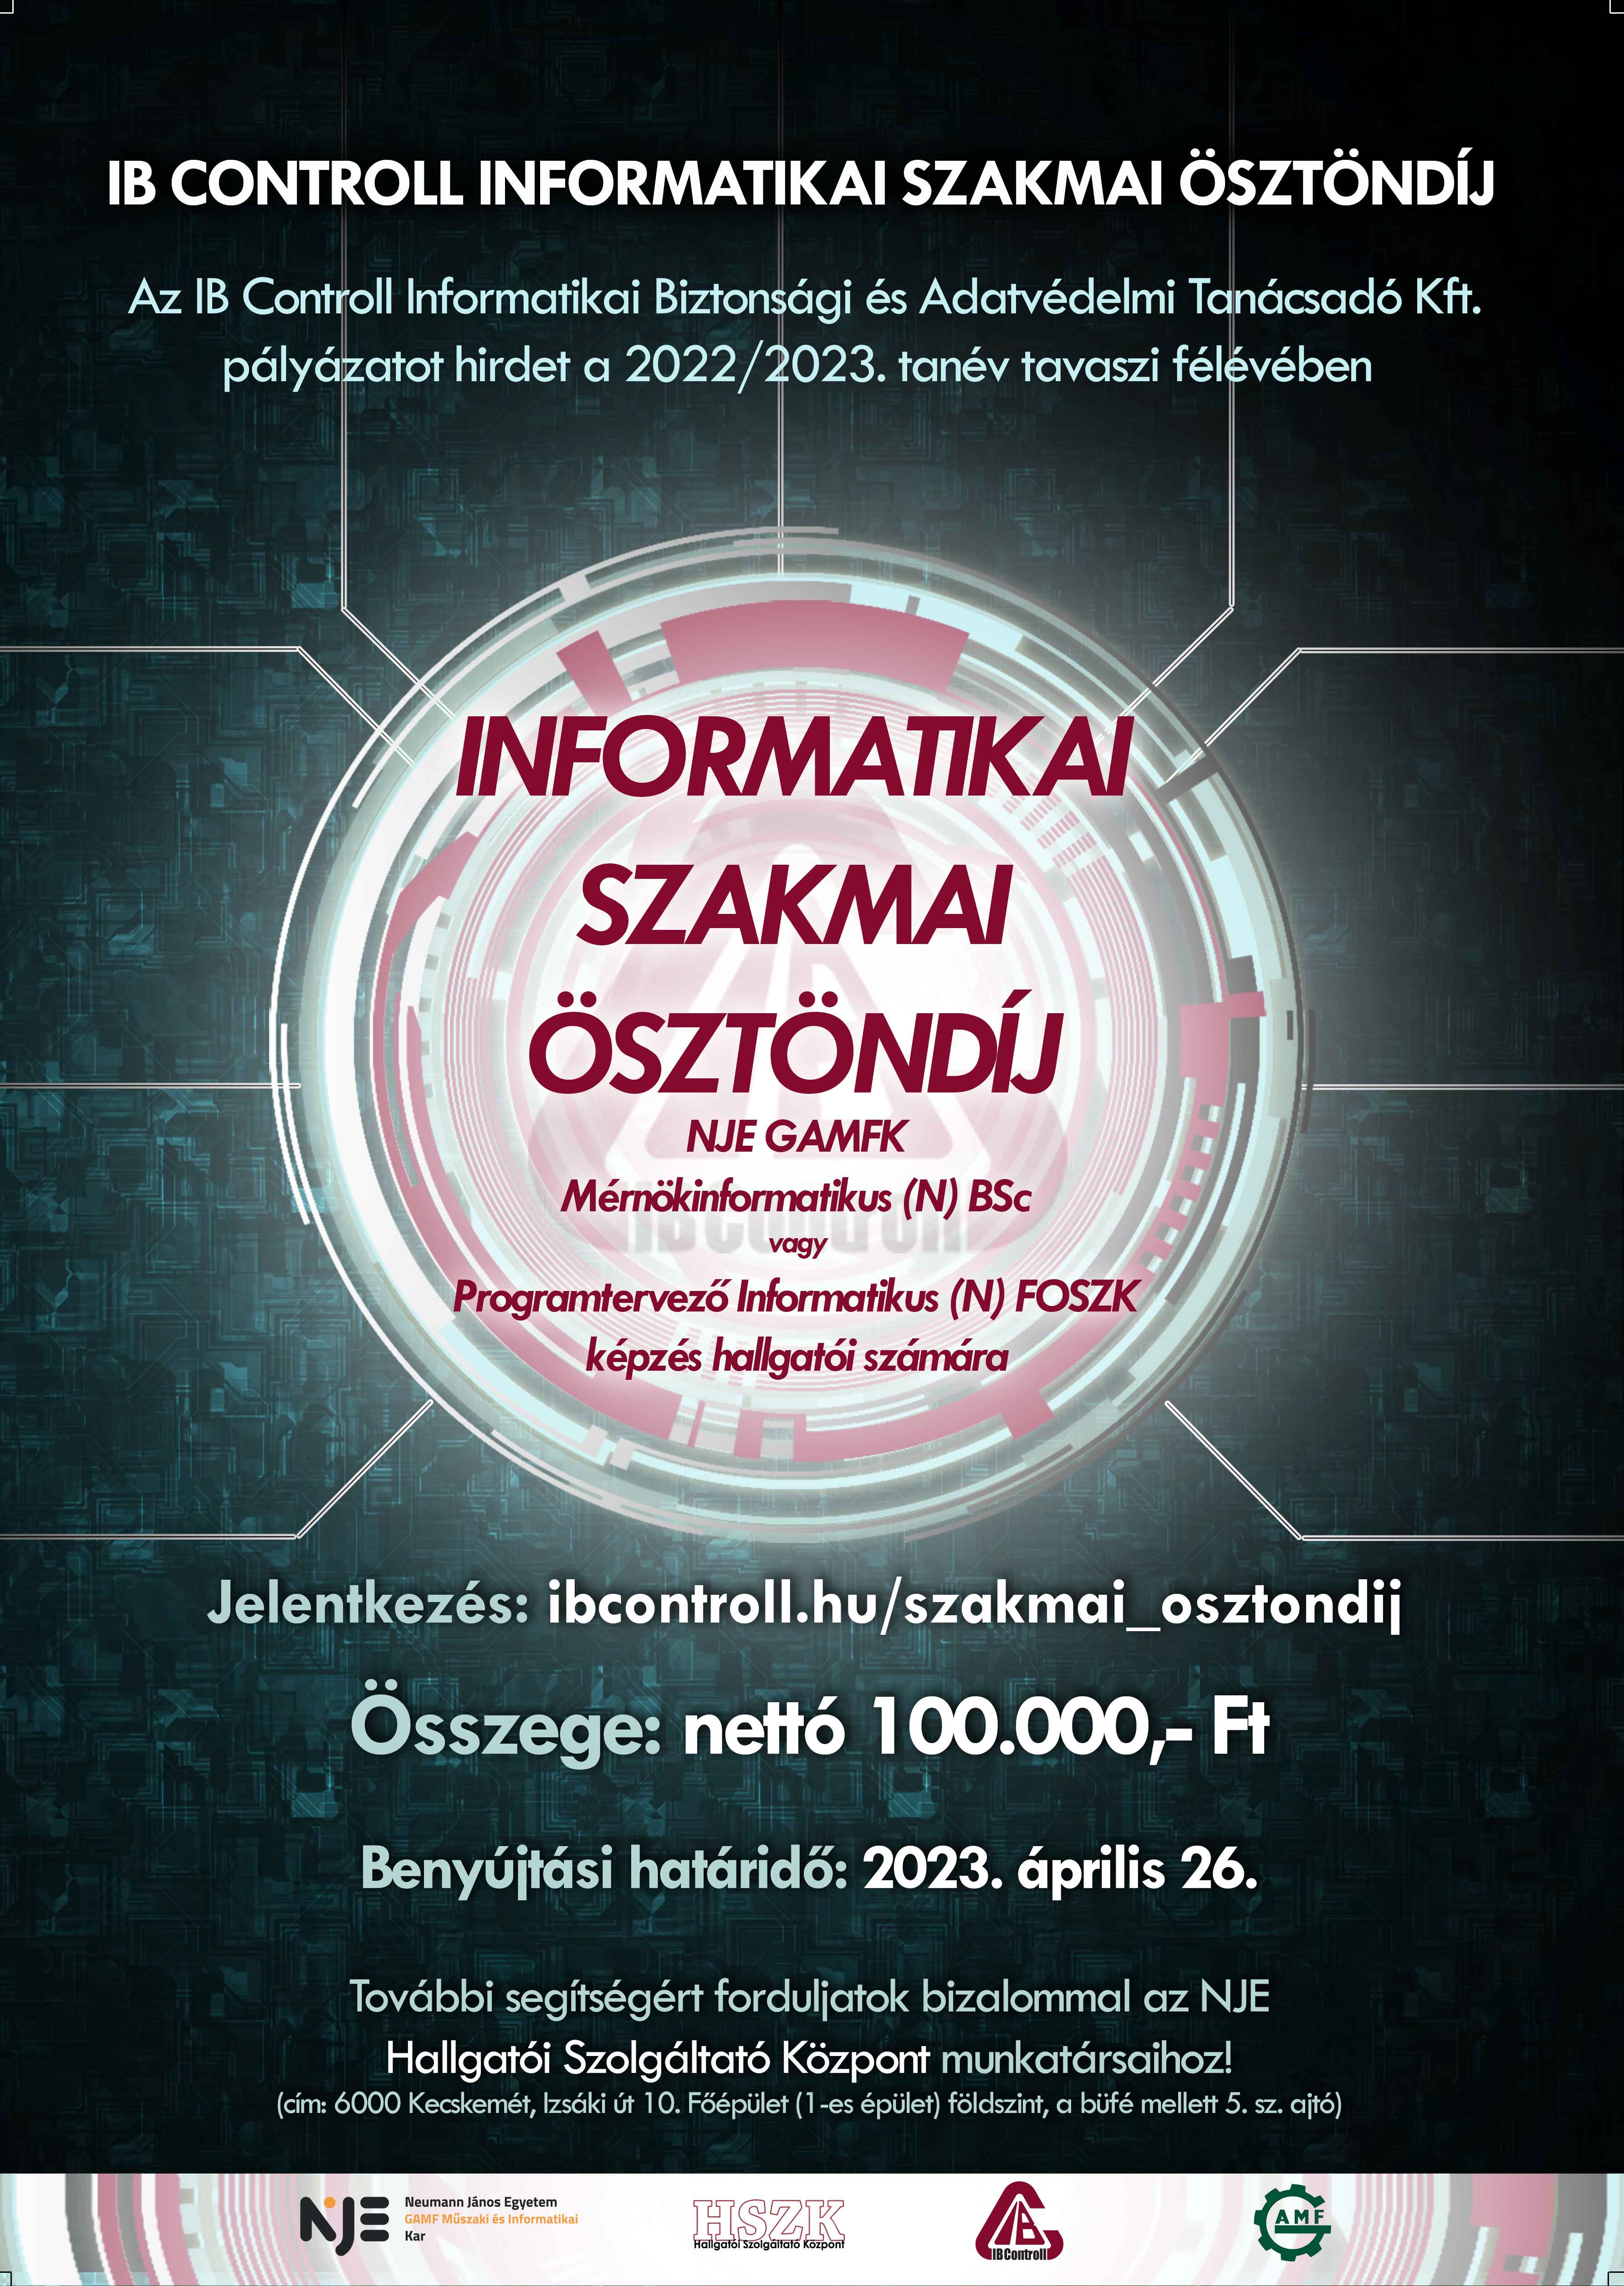 IBC_osztondij_2022-23_tavasz_web